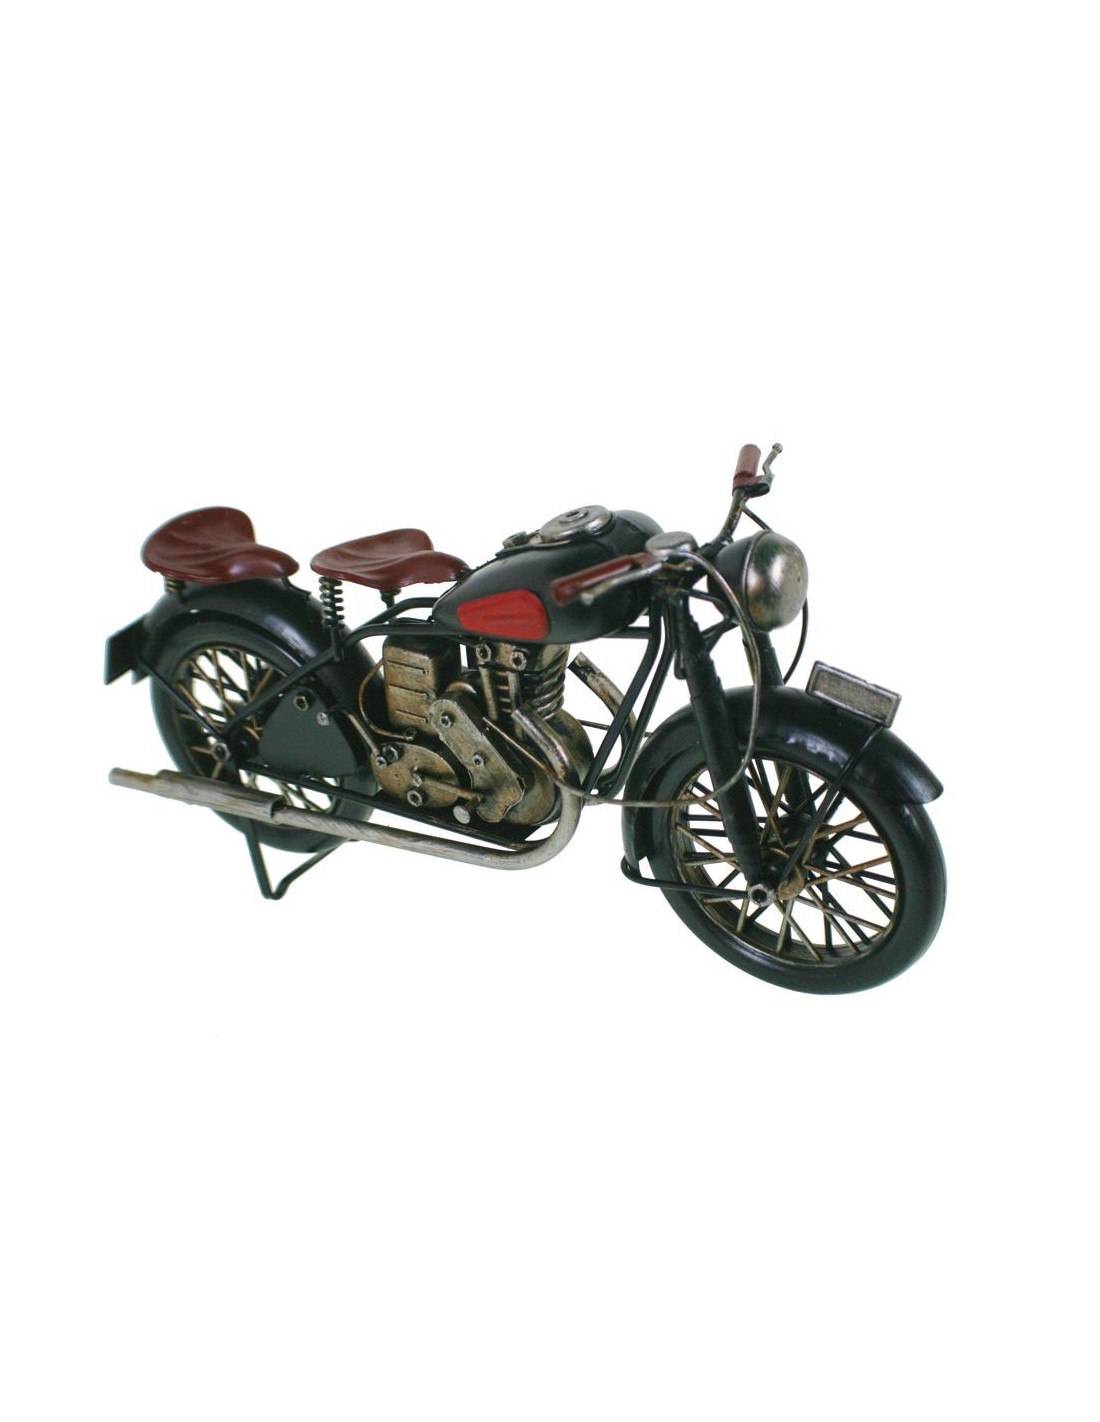 Moto vintage para replica